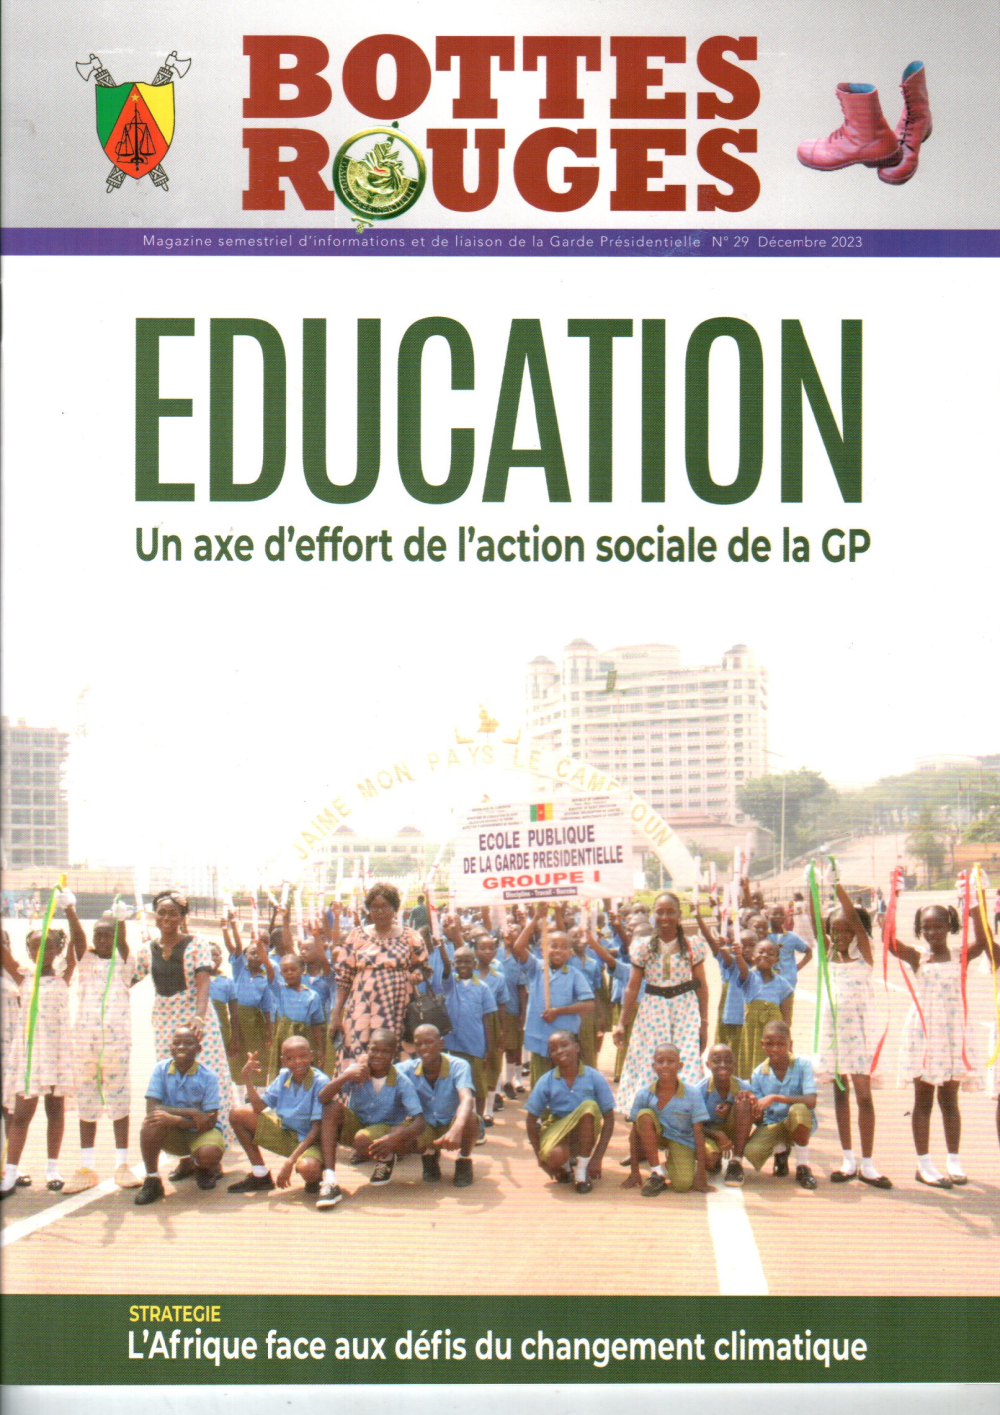 En marge des missions qui sont les siennes, cette unité d’élite a mis en place un système scolaire qui est ouvert à tous les Camerounais. Cette action sociale est au cœur du dernier numéro de Bottes rouges, le magazine de la Garde présidentielle.